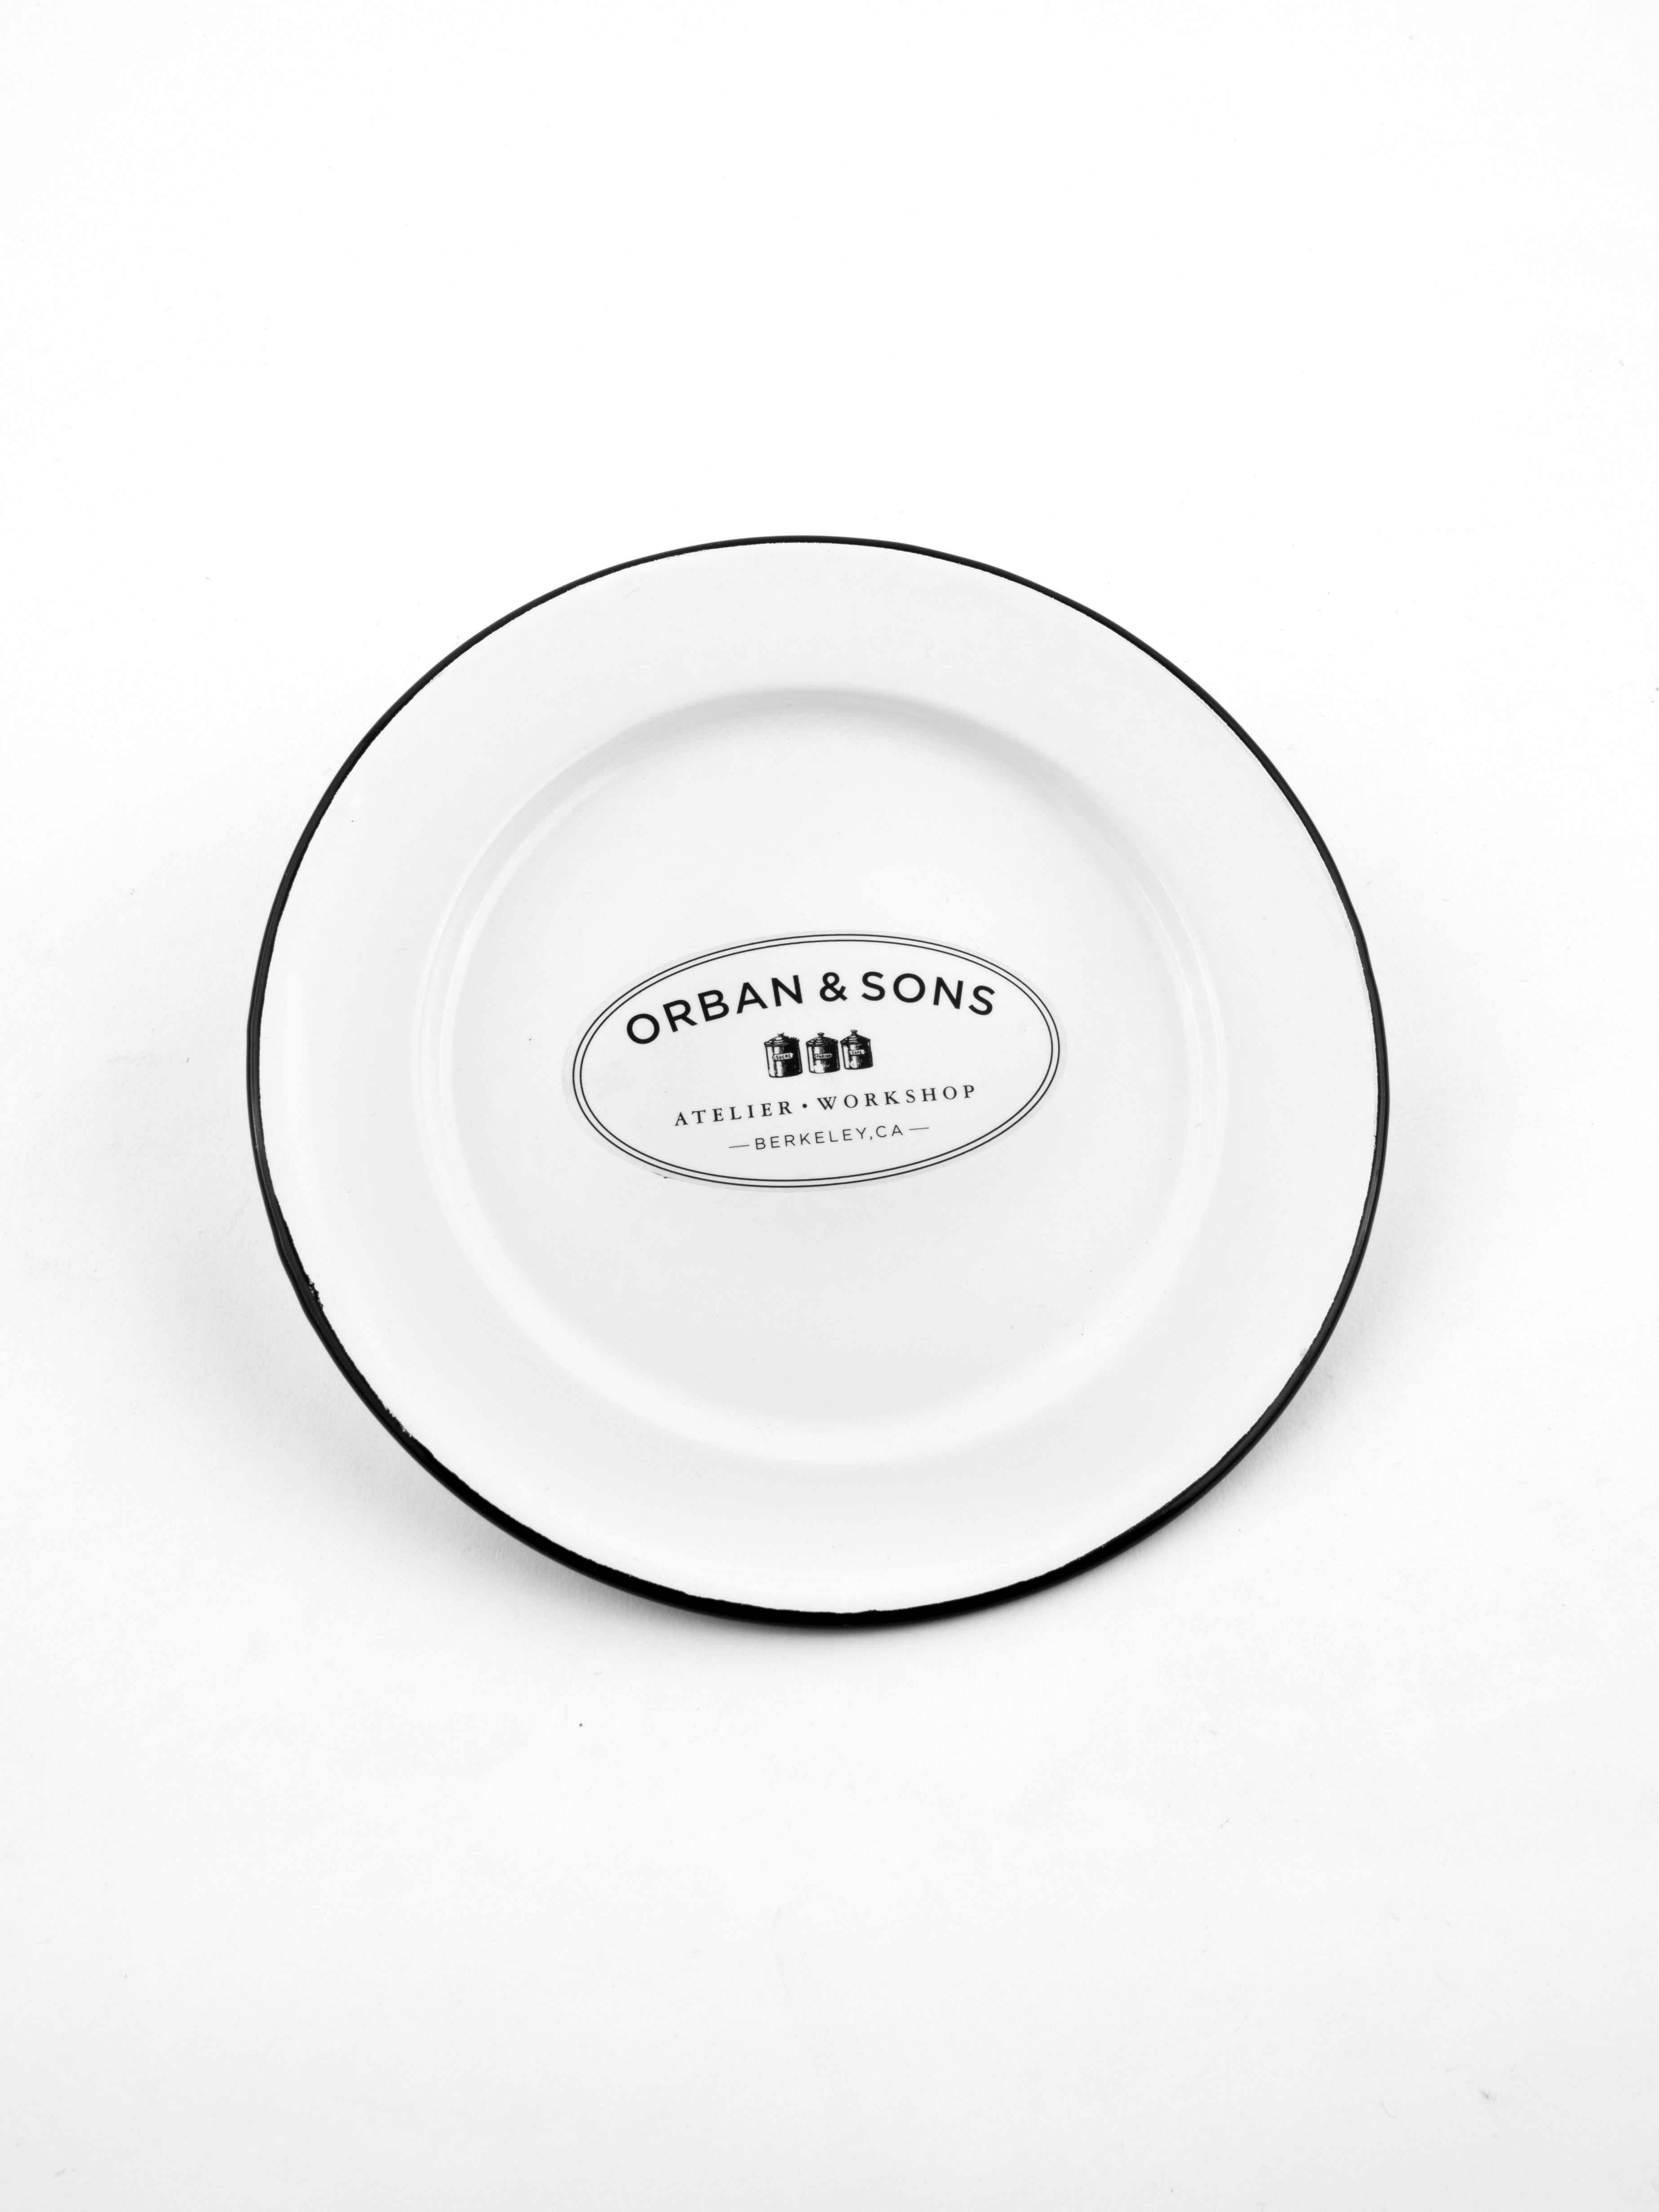 Orban & Sons Enamel Dessert Plate Plates Orban & Sons Brand_Orban & Sons CLEAN OUT SALE Dinnerware_Bowls & Plates Enamelware Kitchen_Serveware KTFWHS Numbers Orban & Sons Serving Trays DSC3954_JasonLeCras_July_26